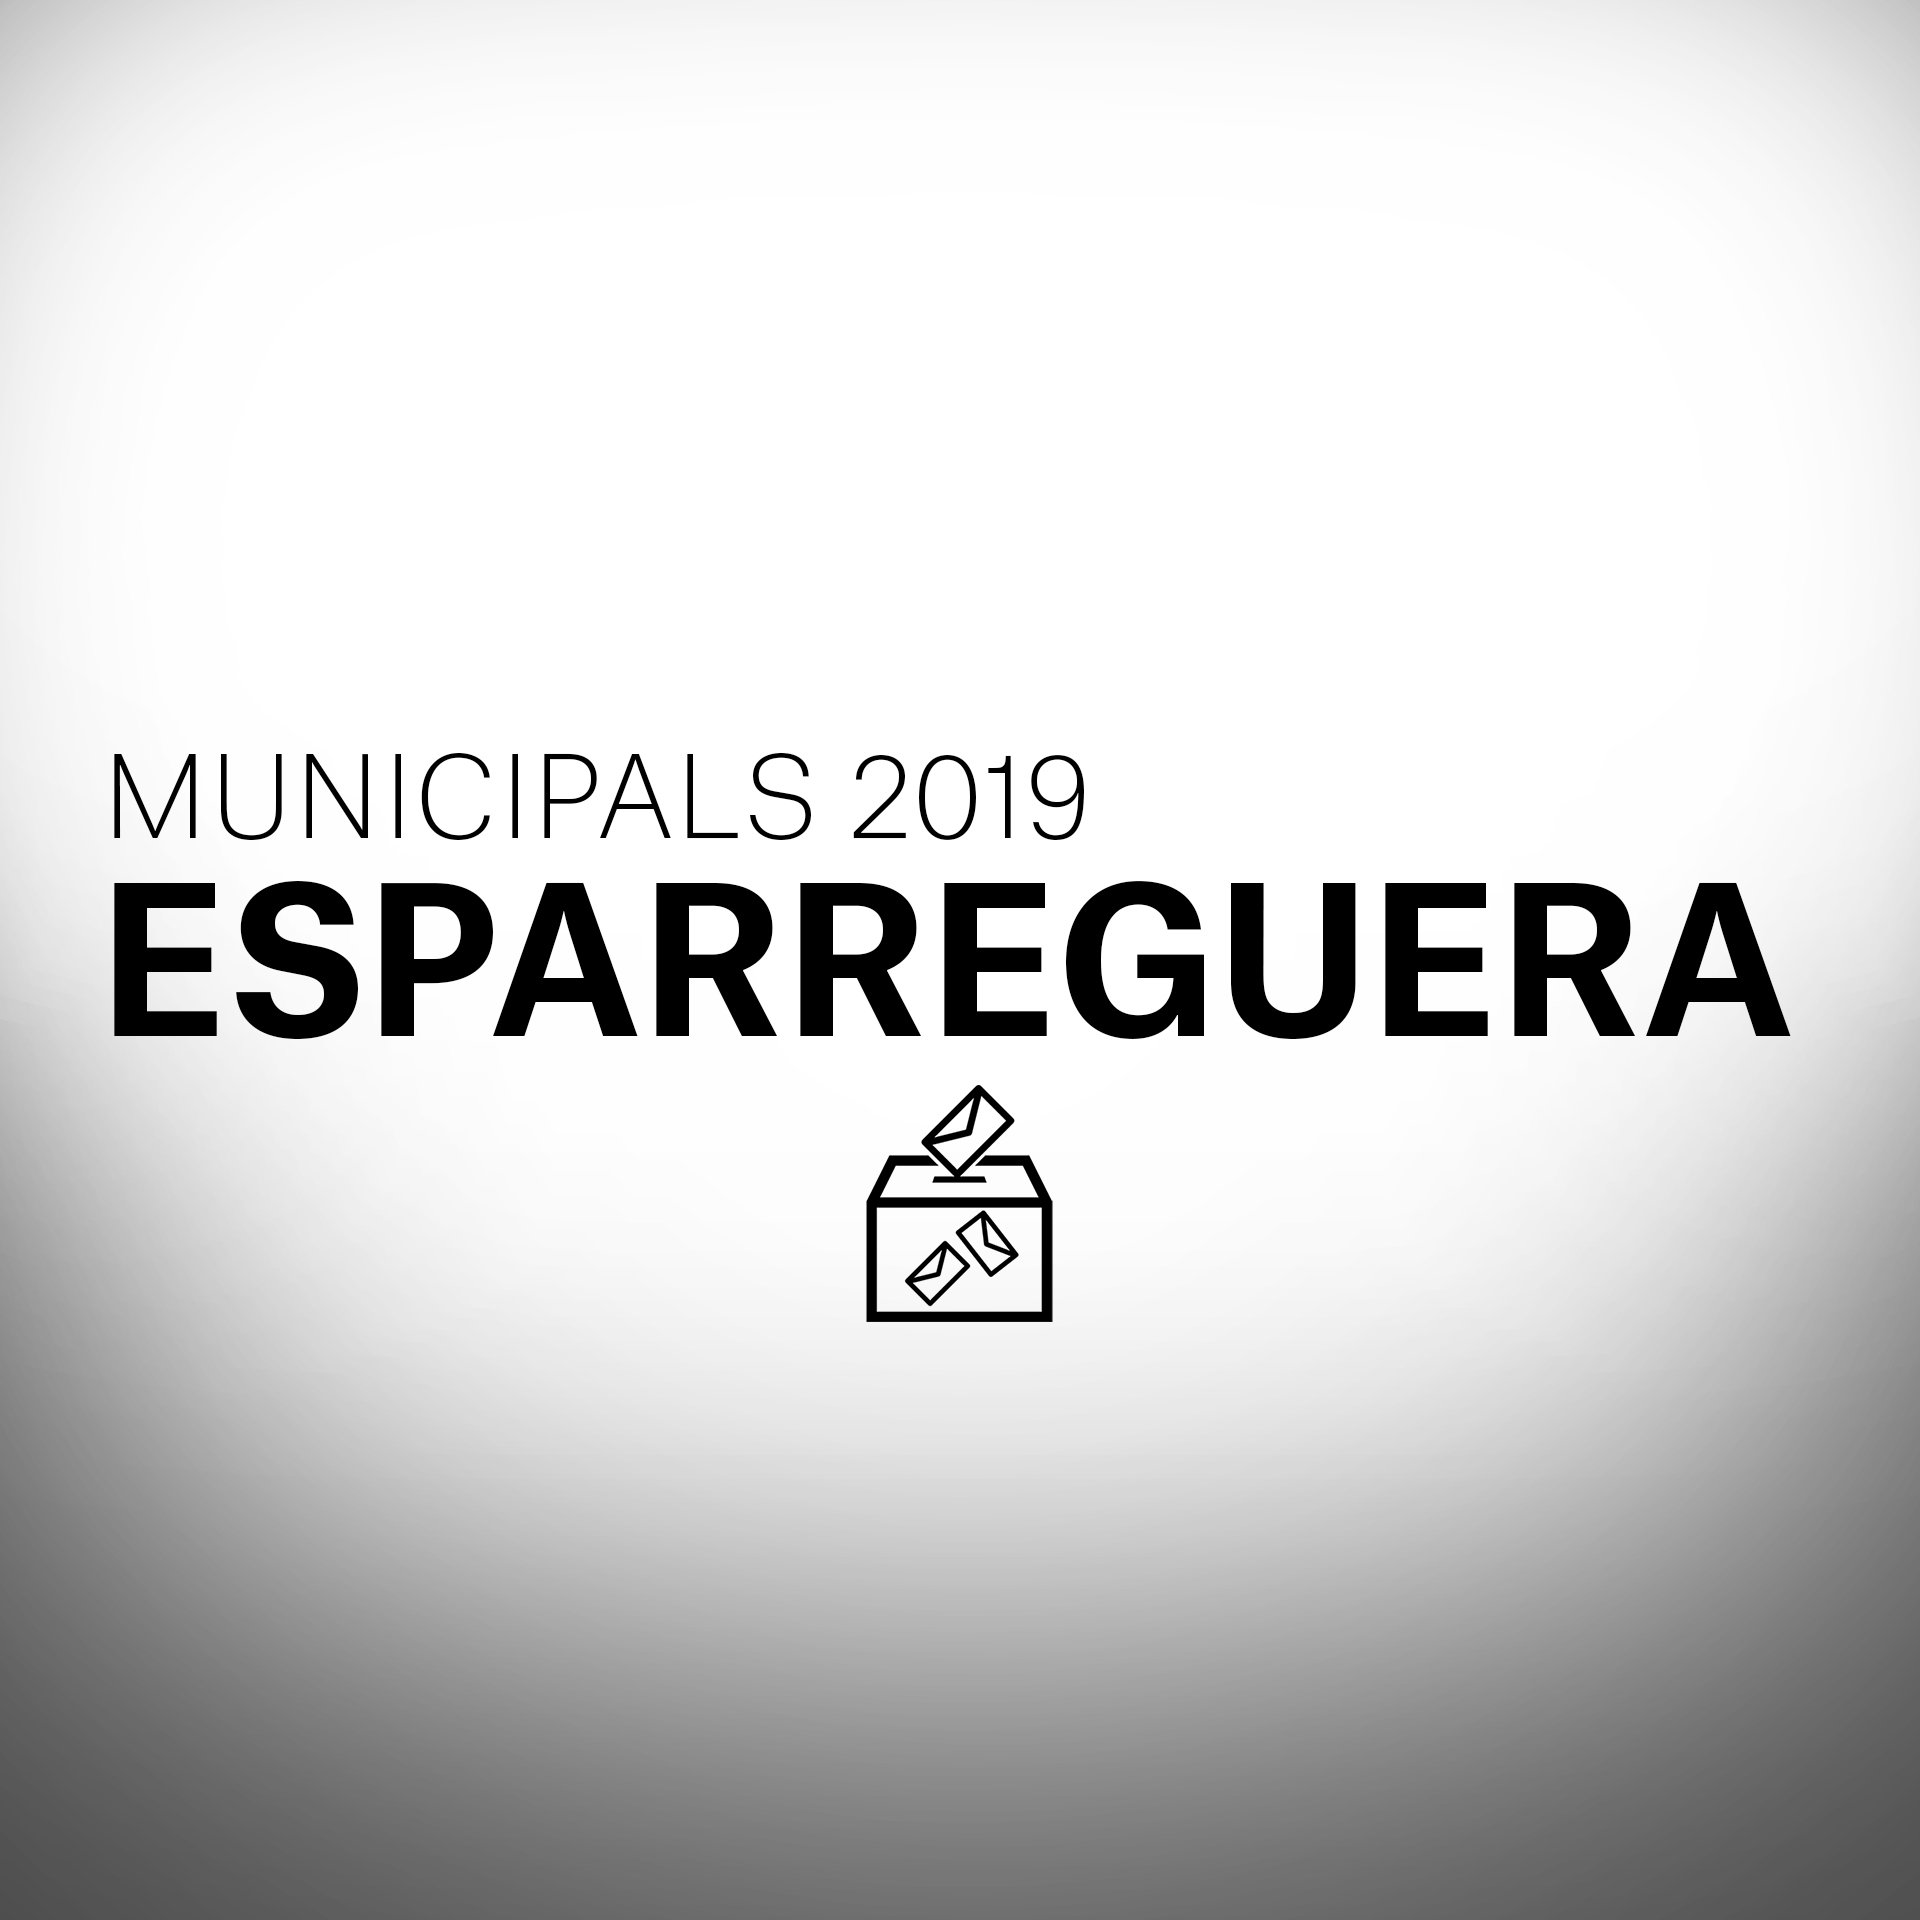 ¿Qué pasará en las Elecciones Municipales en Esparreguera?